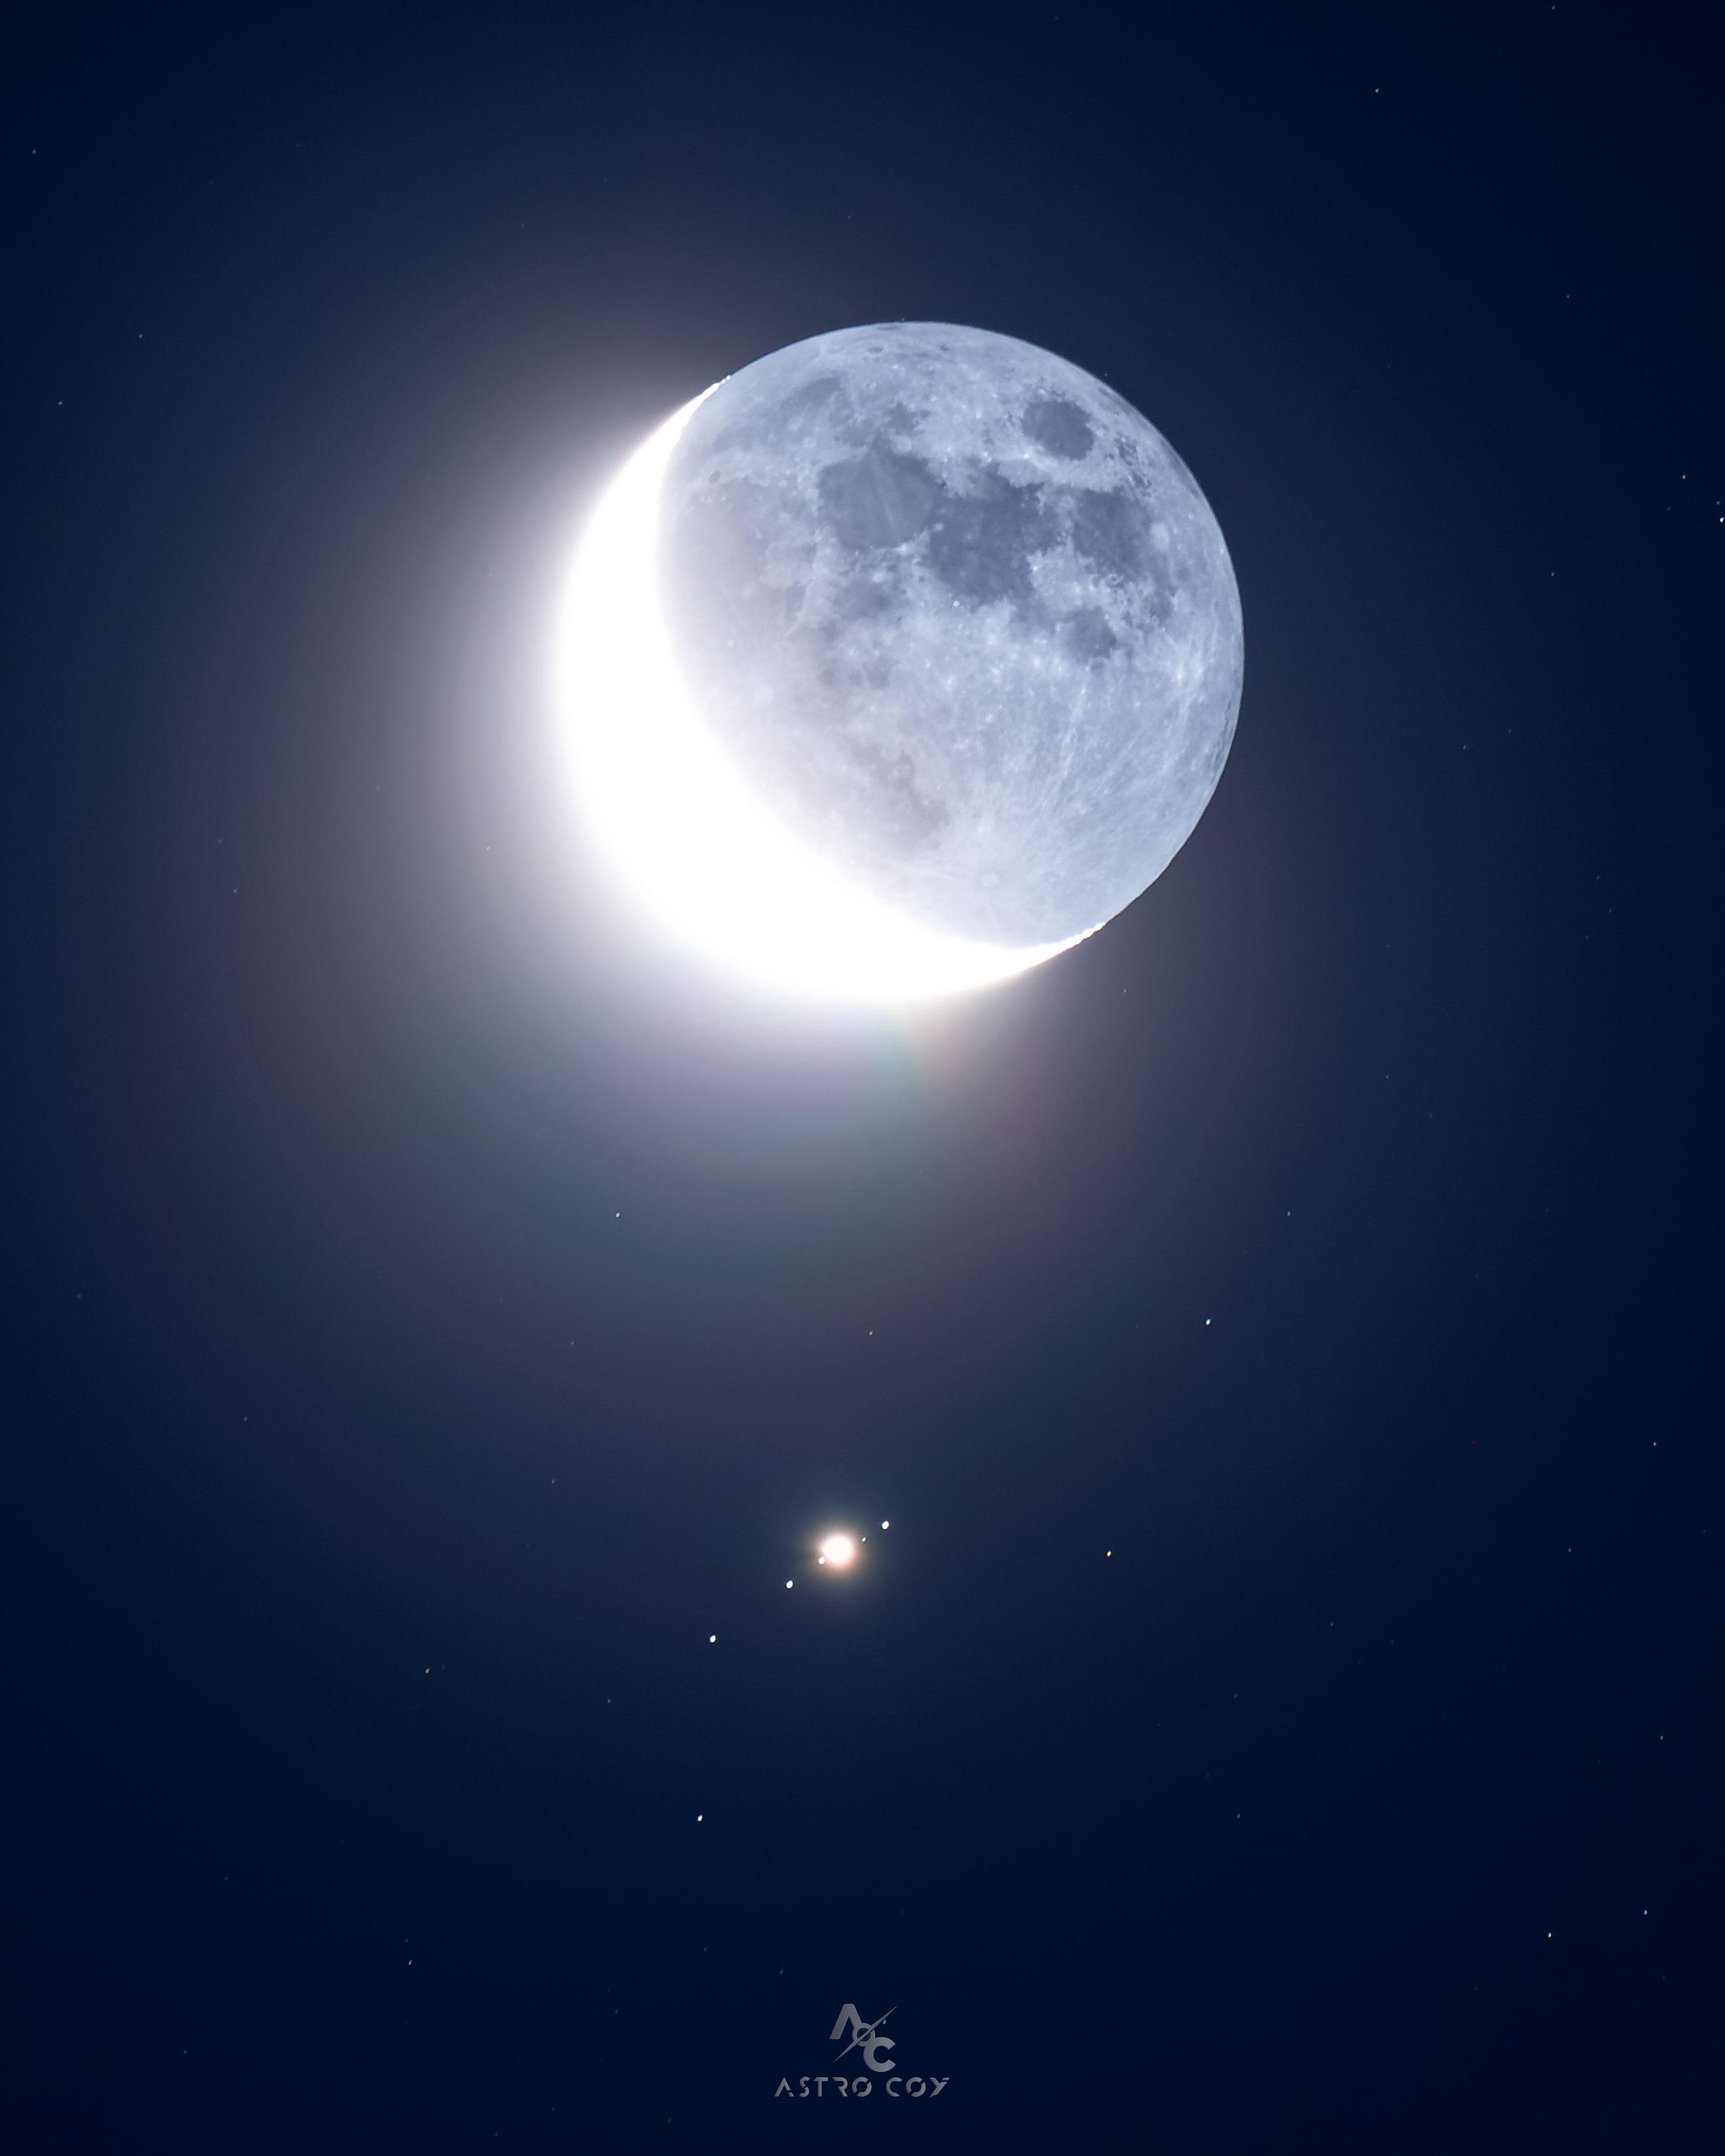 يُرى قمر الأرض، في طور الهلال، فوق مركز الصورة تماماً. في الأسفل تماماً بقعةٌ ساطعة مُحاطة بأربع بُقَعٍ أُخرى، جميعها في صفّ، وهي جميعها من أقمار المُشتري.